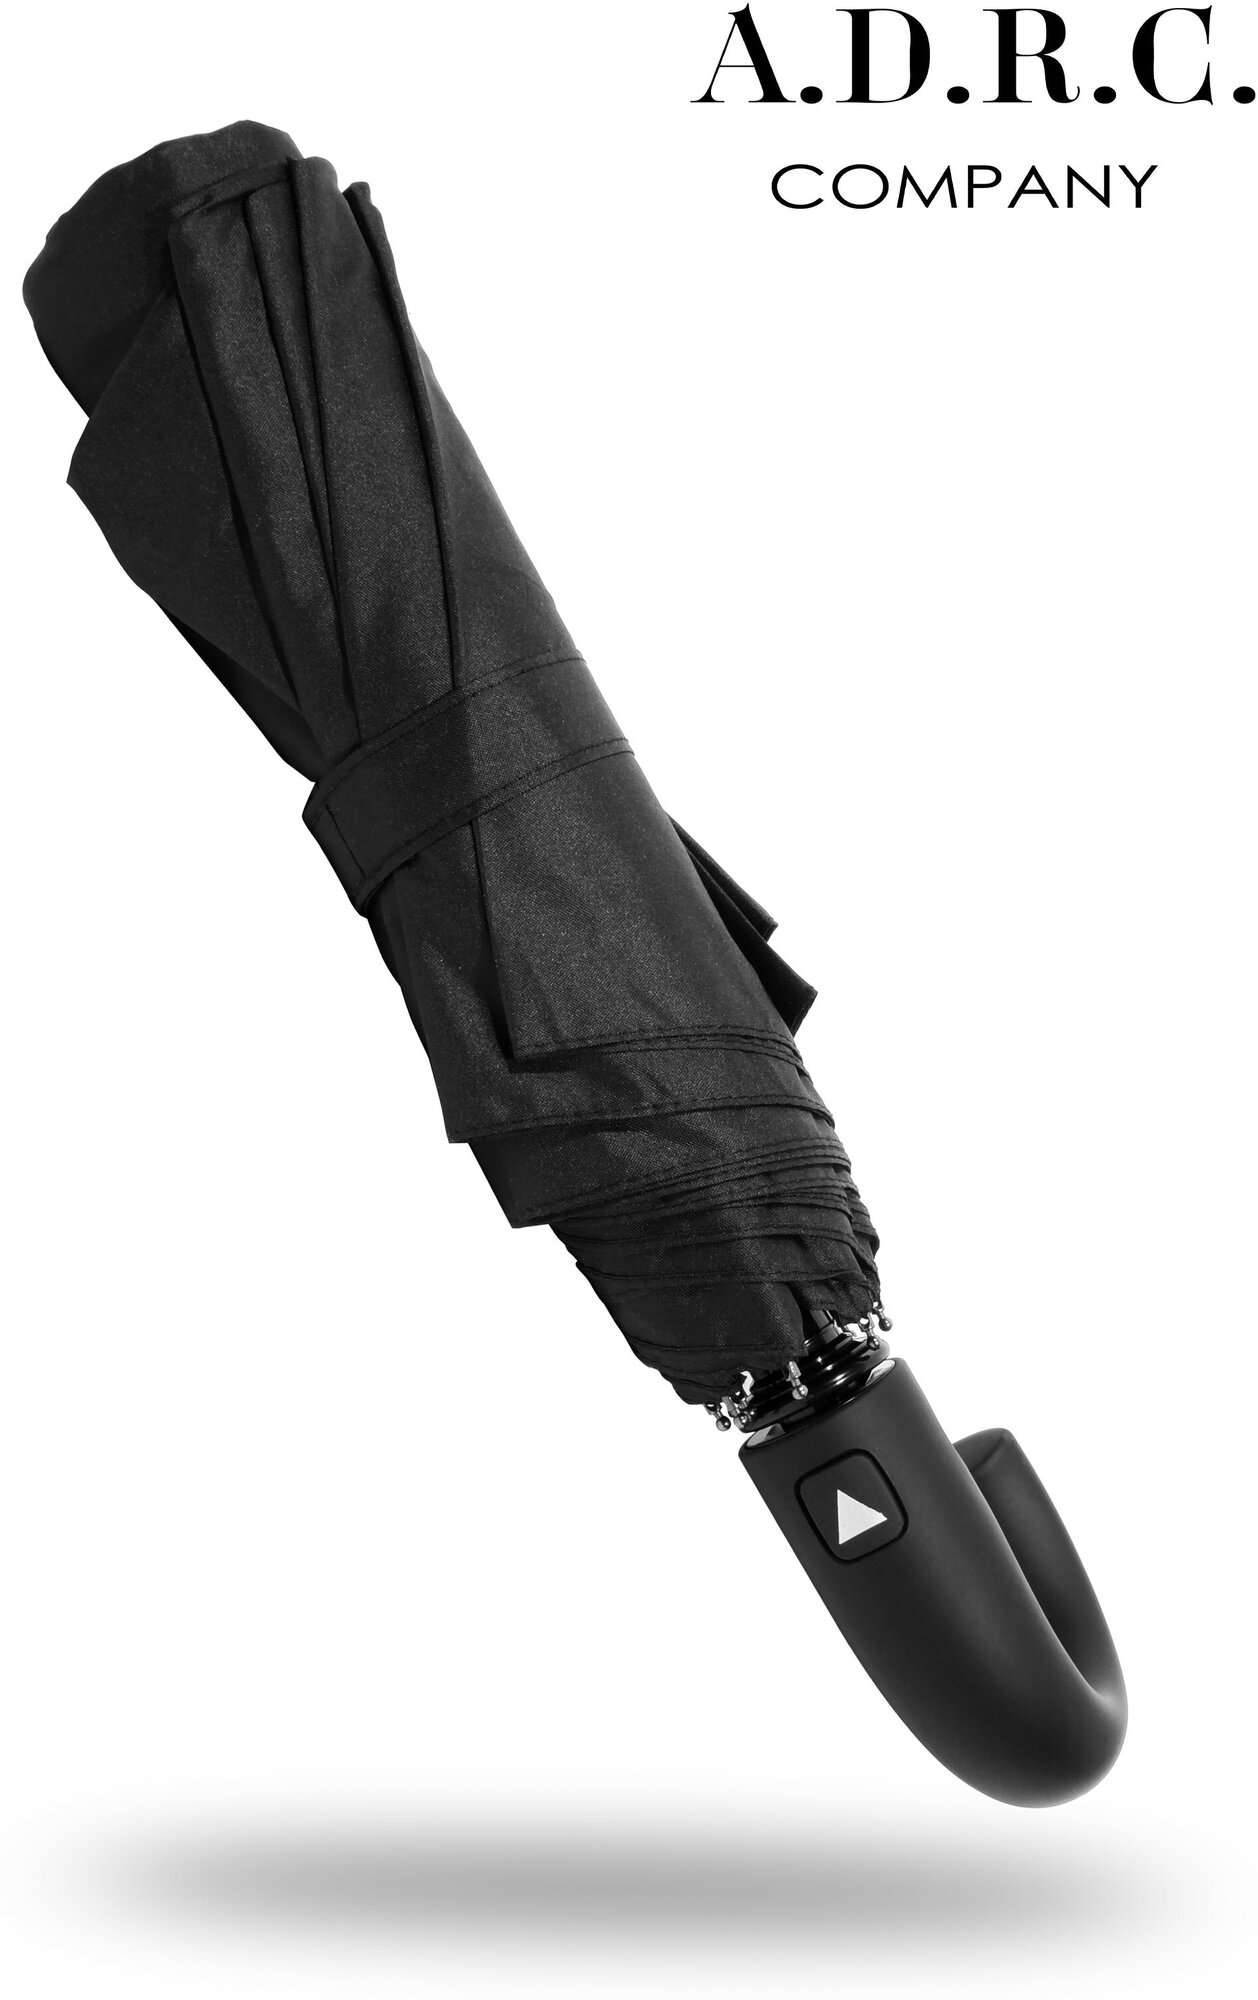 Тестовый образец зонт складной черный (Картинка)